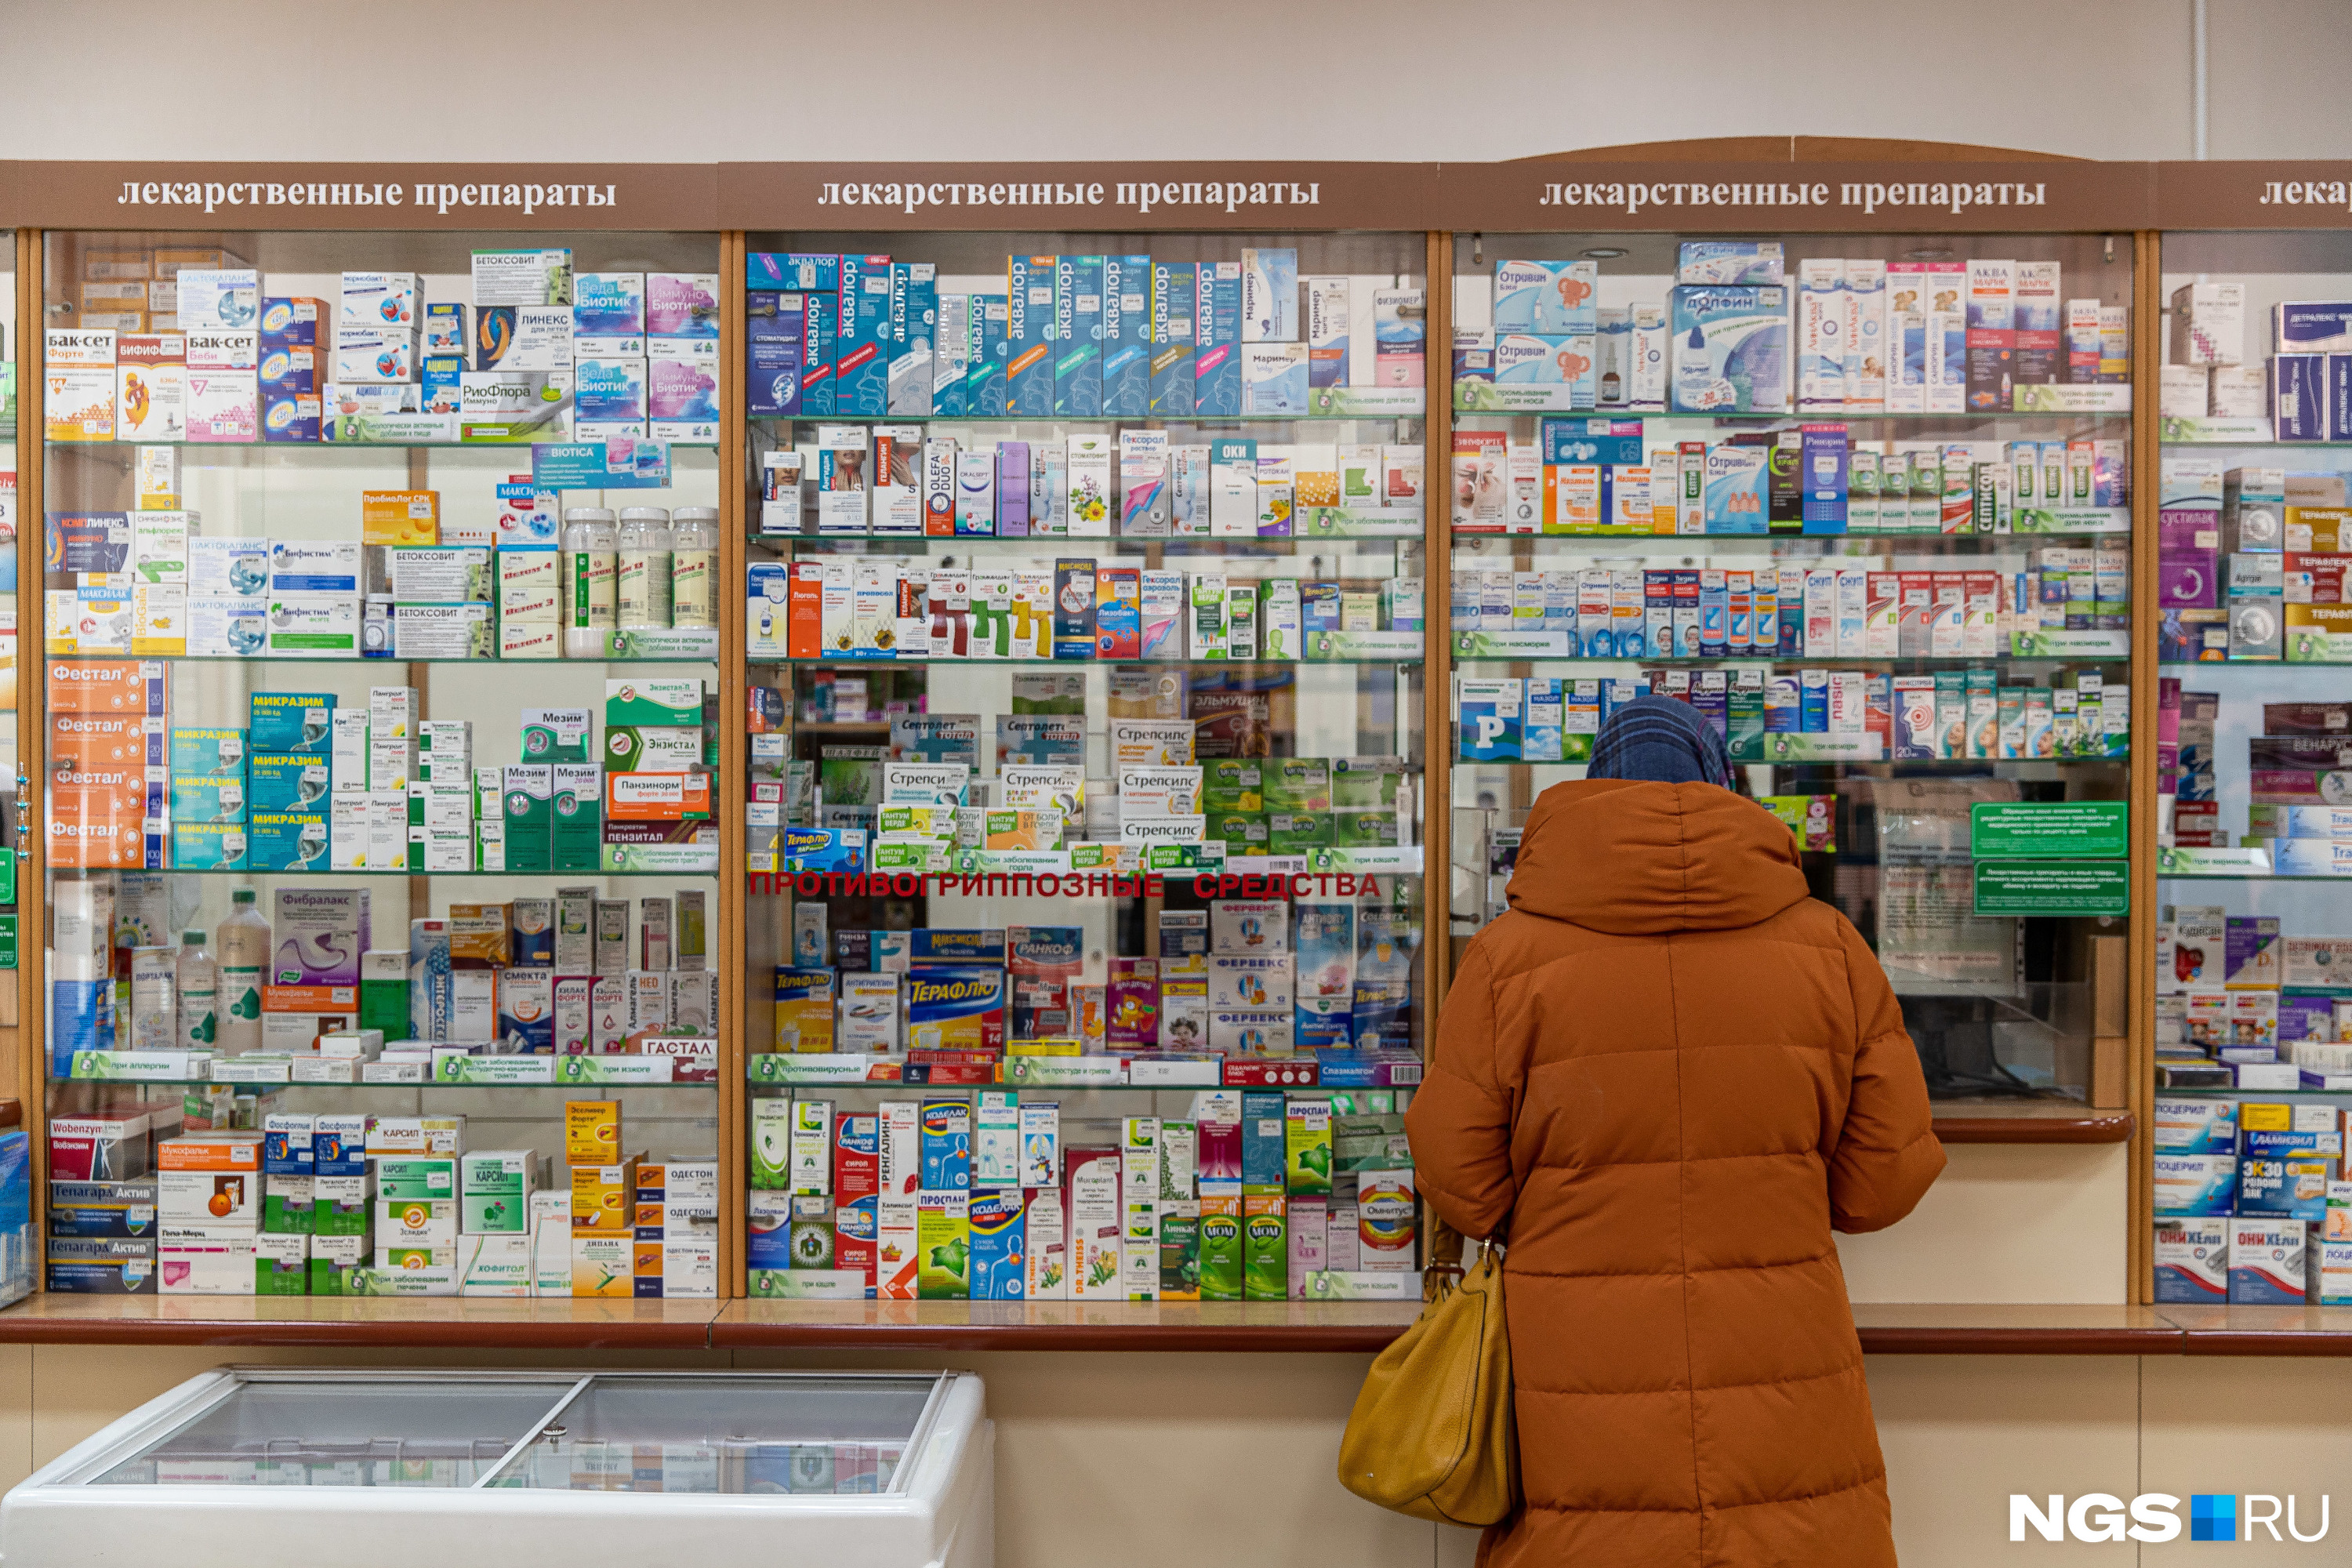 Наличие Лекарства В Петербургских Аптеках